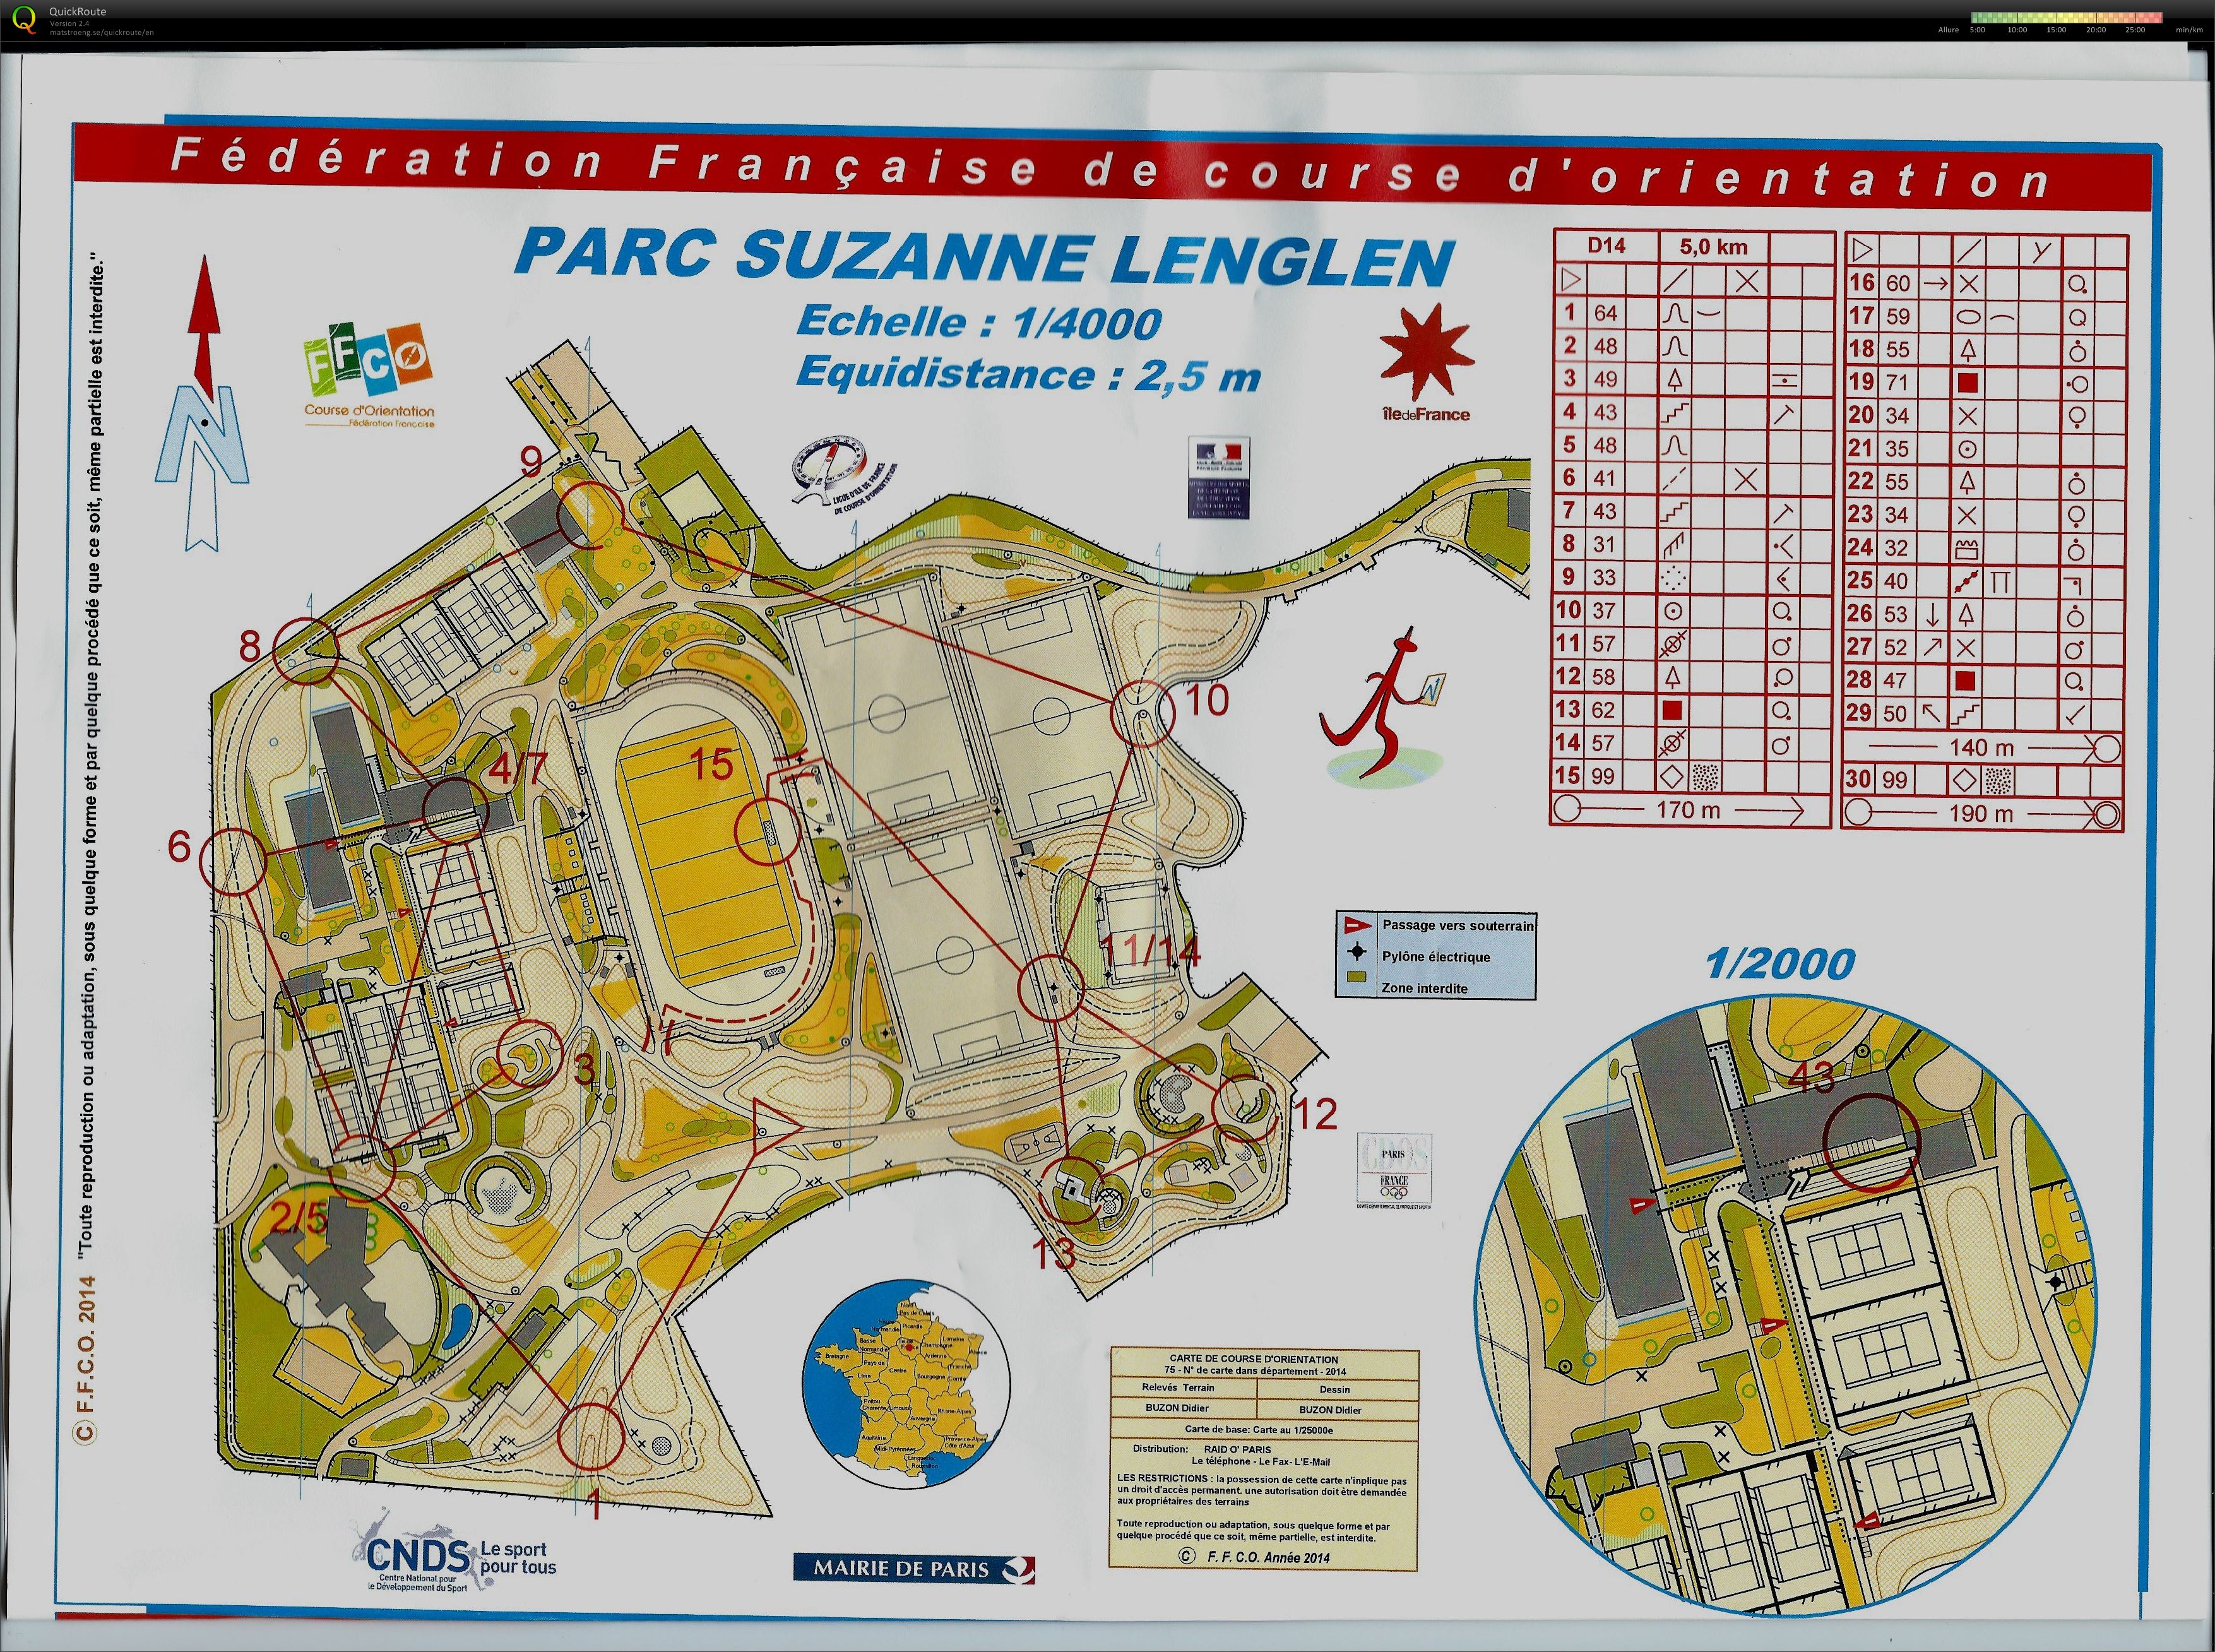 Parc Suzanne Lenglen (28.09.2014)